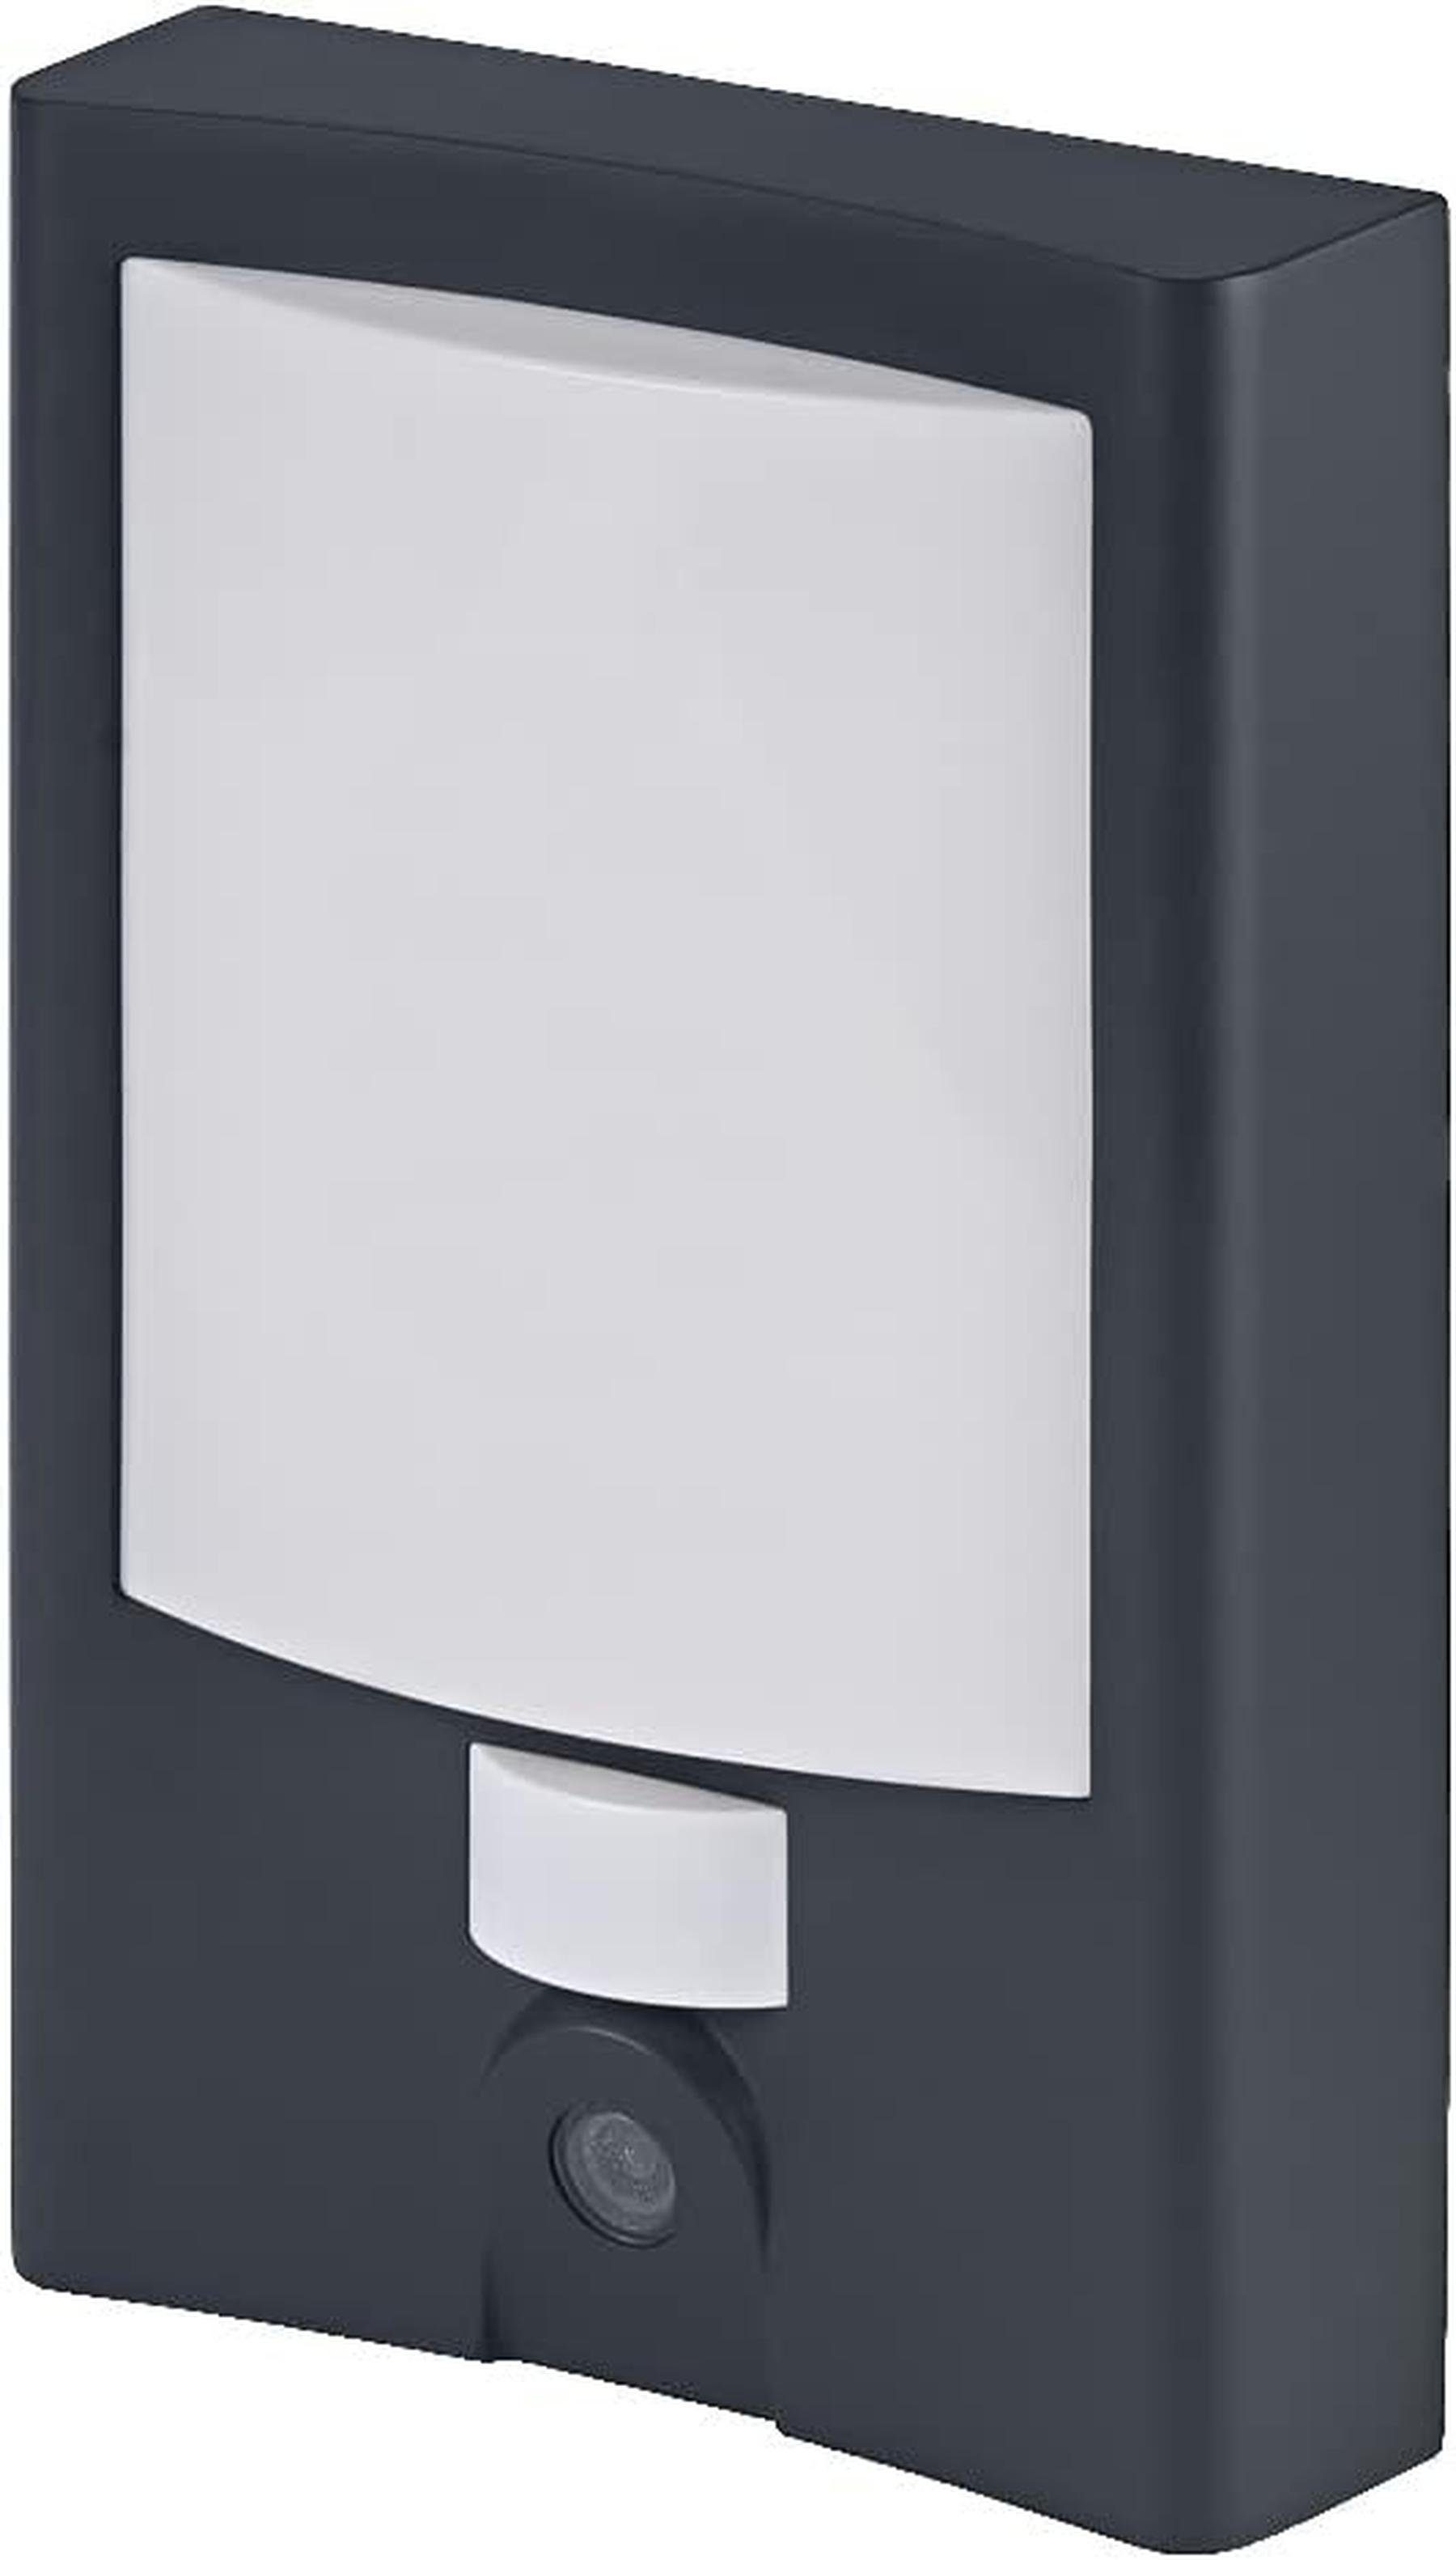 Outdoor warmweißes Ledvance LEDVANCE Licht smarte SMART+ Hausnummer WIFI-Technolo K) (3000